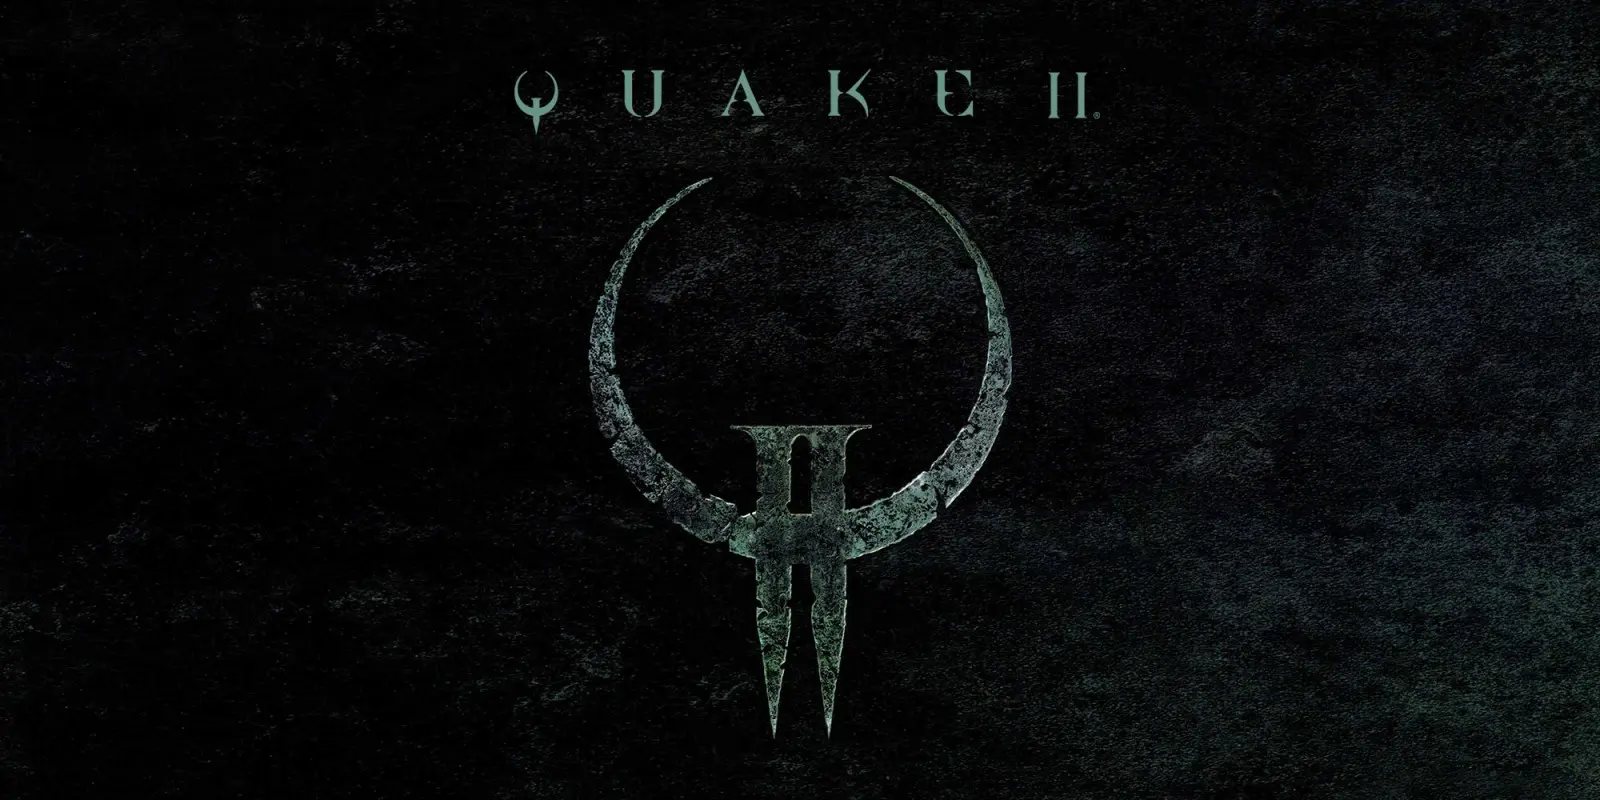 Rilis ulang Quake II yang diperbarui kini tersedia di semua sistem • Nintendo Connect